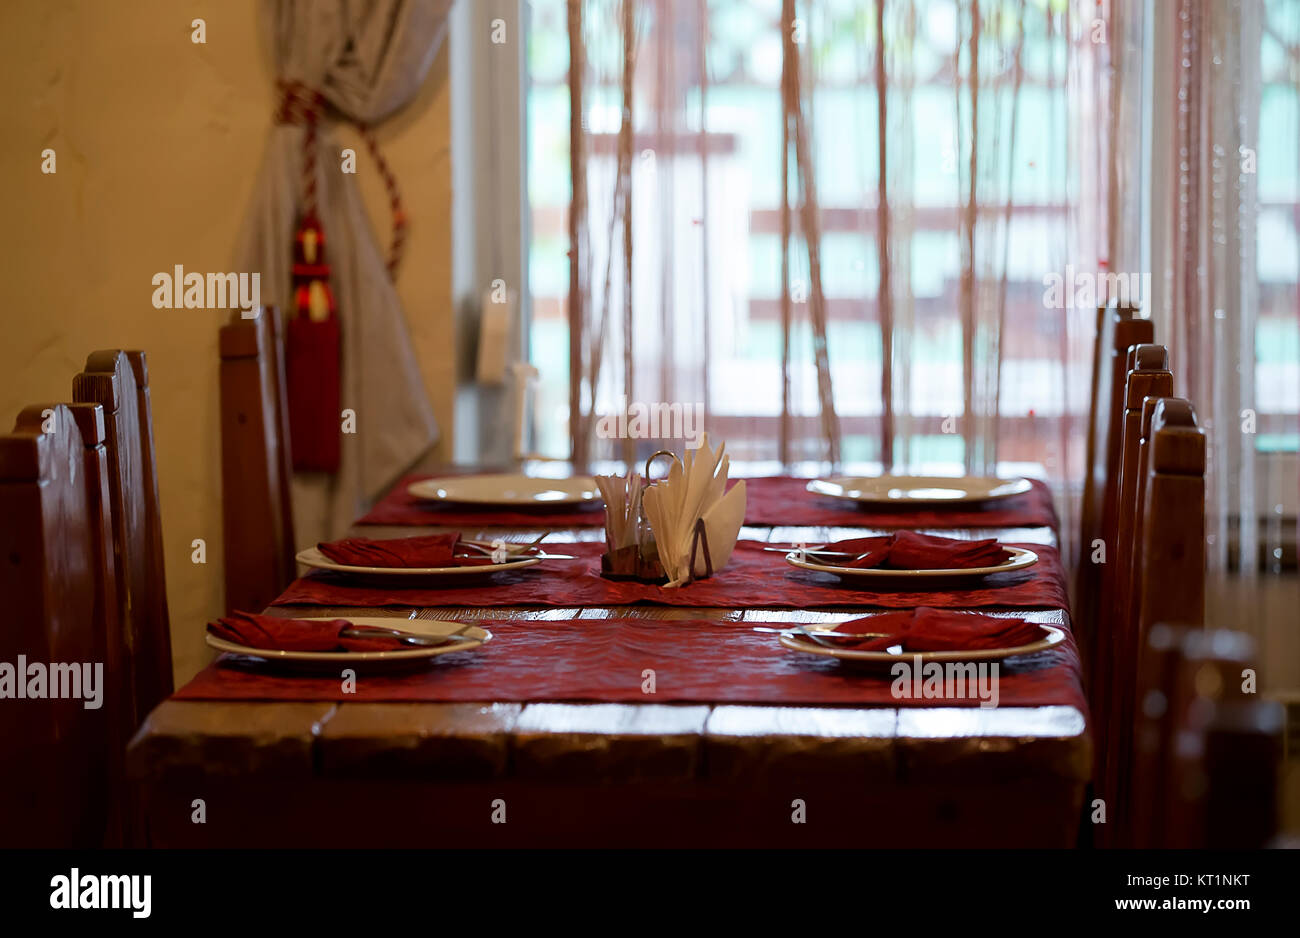 Im Restaurant. Das Restaurant. Tabelle einstellen. Vorbereitung für ein Bankett. Festlichen Tisch. s ein langer Tisch, Tischdecken und einen Strauß Blumen auf t Stockfoto